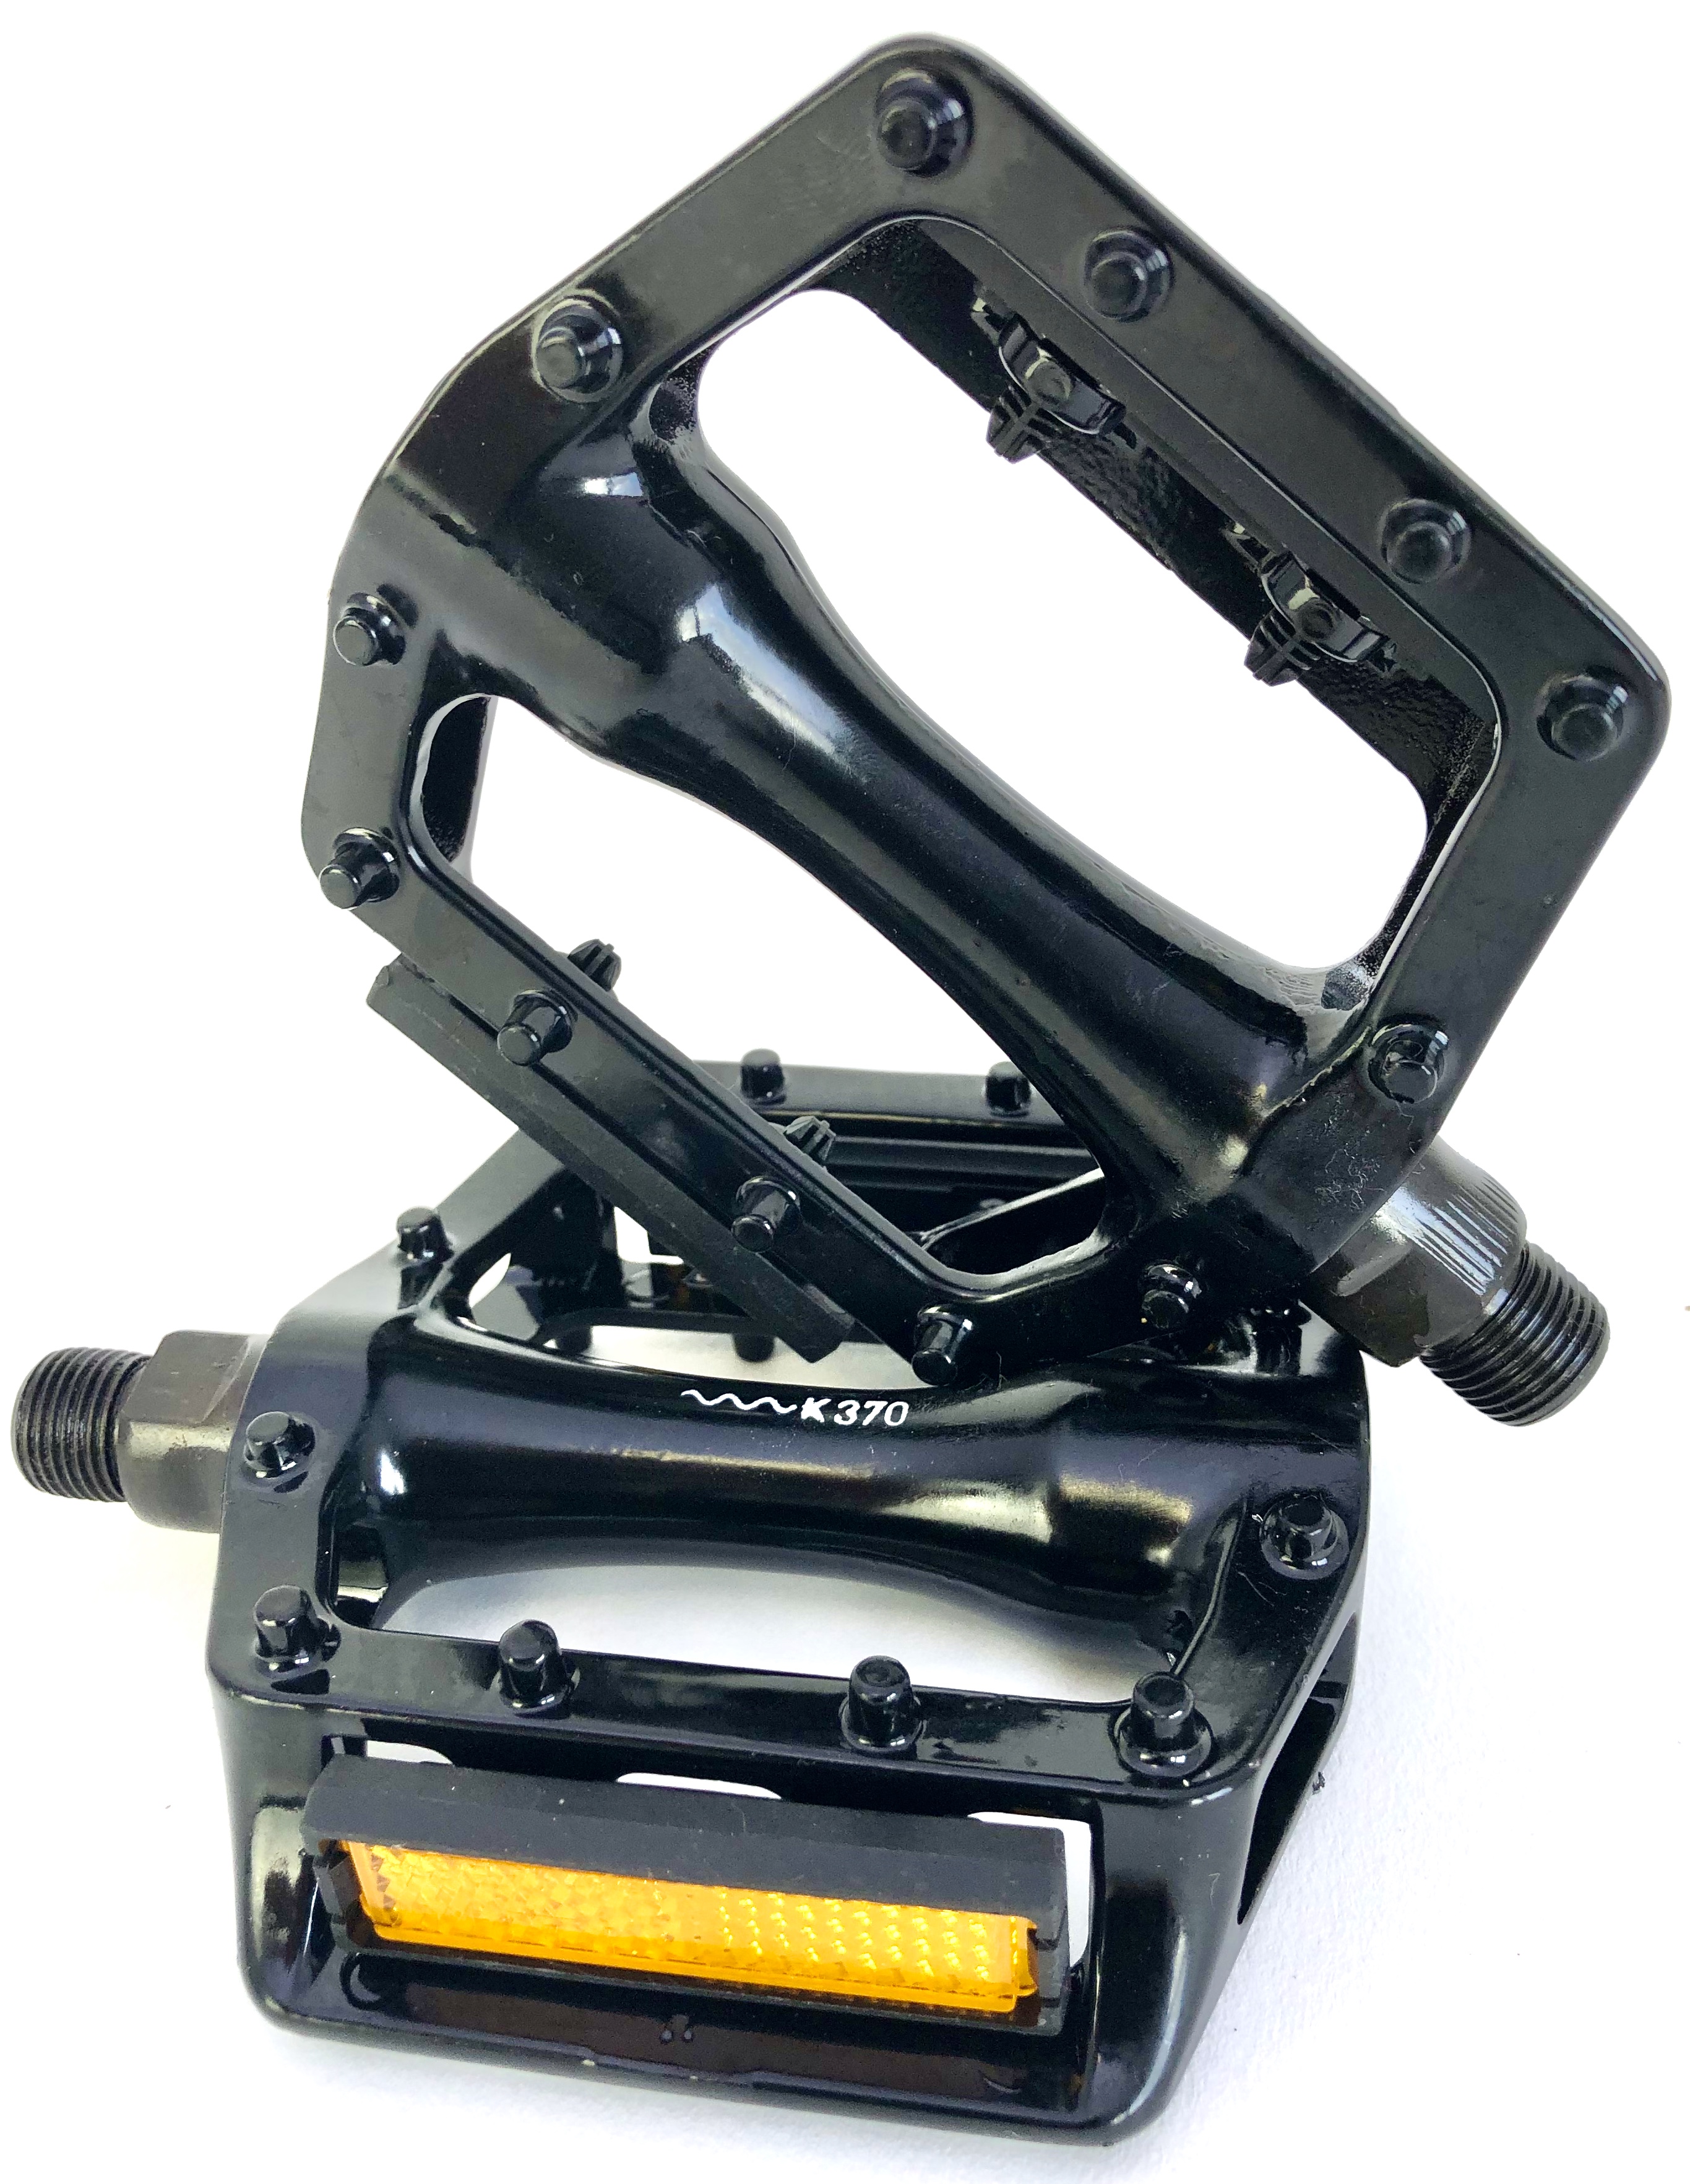 Alu - pedales   Total Grip  con reflectante 9/16 pulgadas, en negro